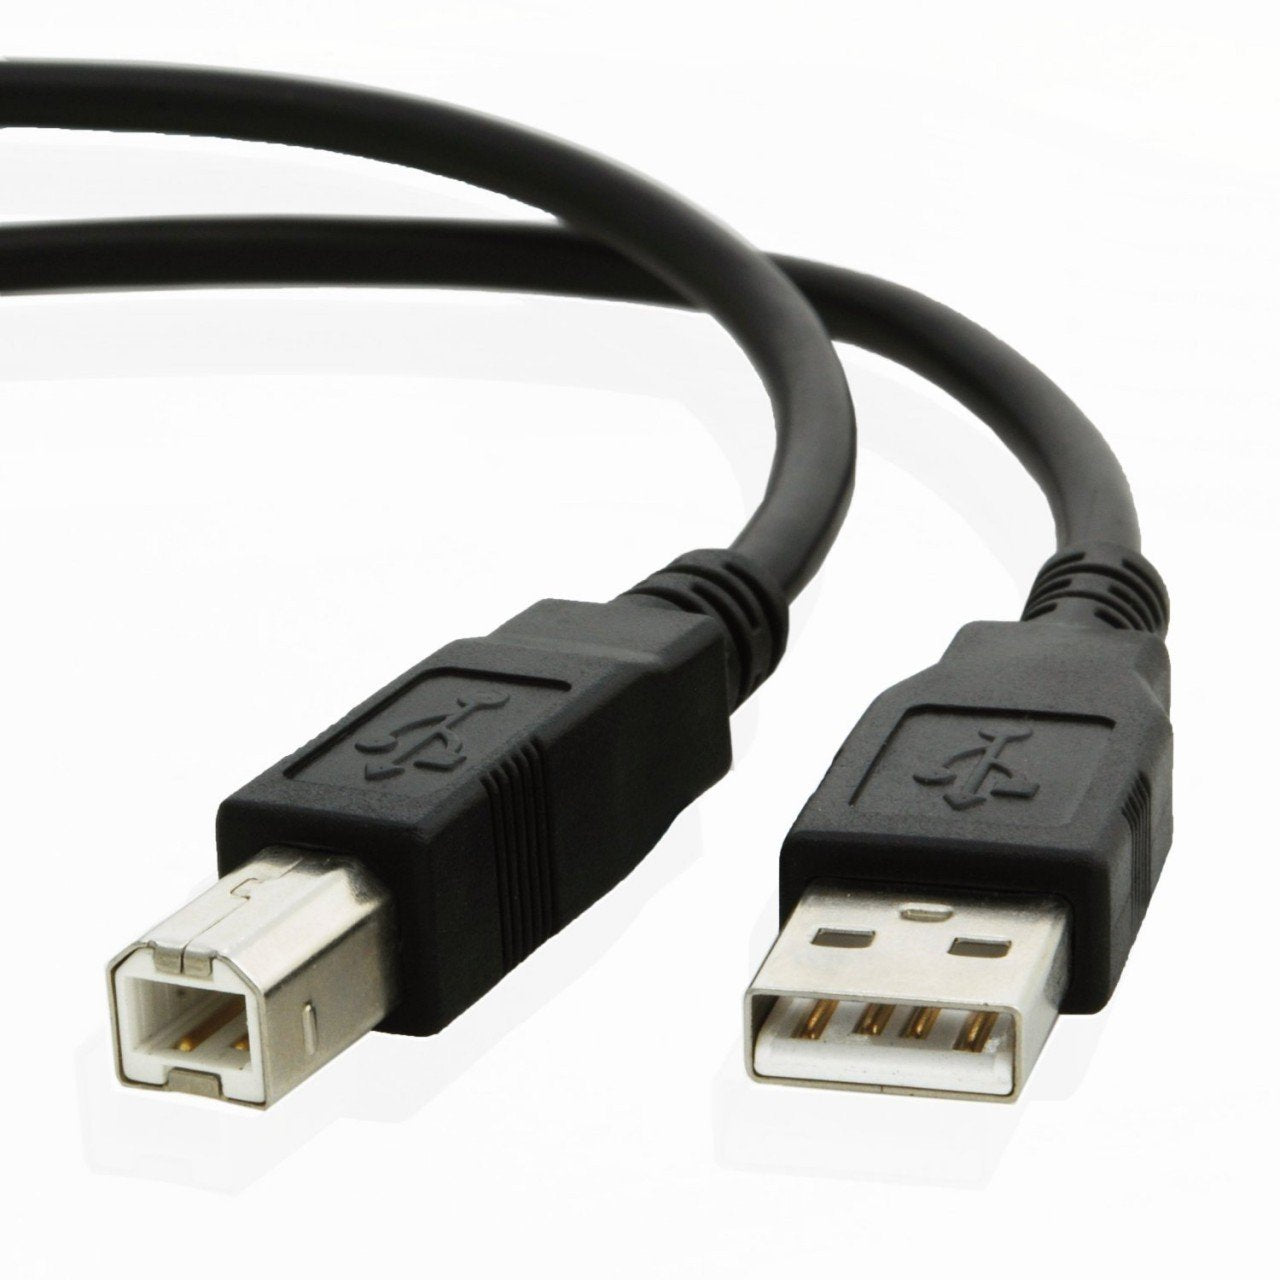 USB cable for Hp LASERJET ENTERPRISE M608x